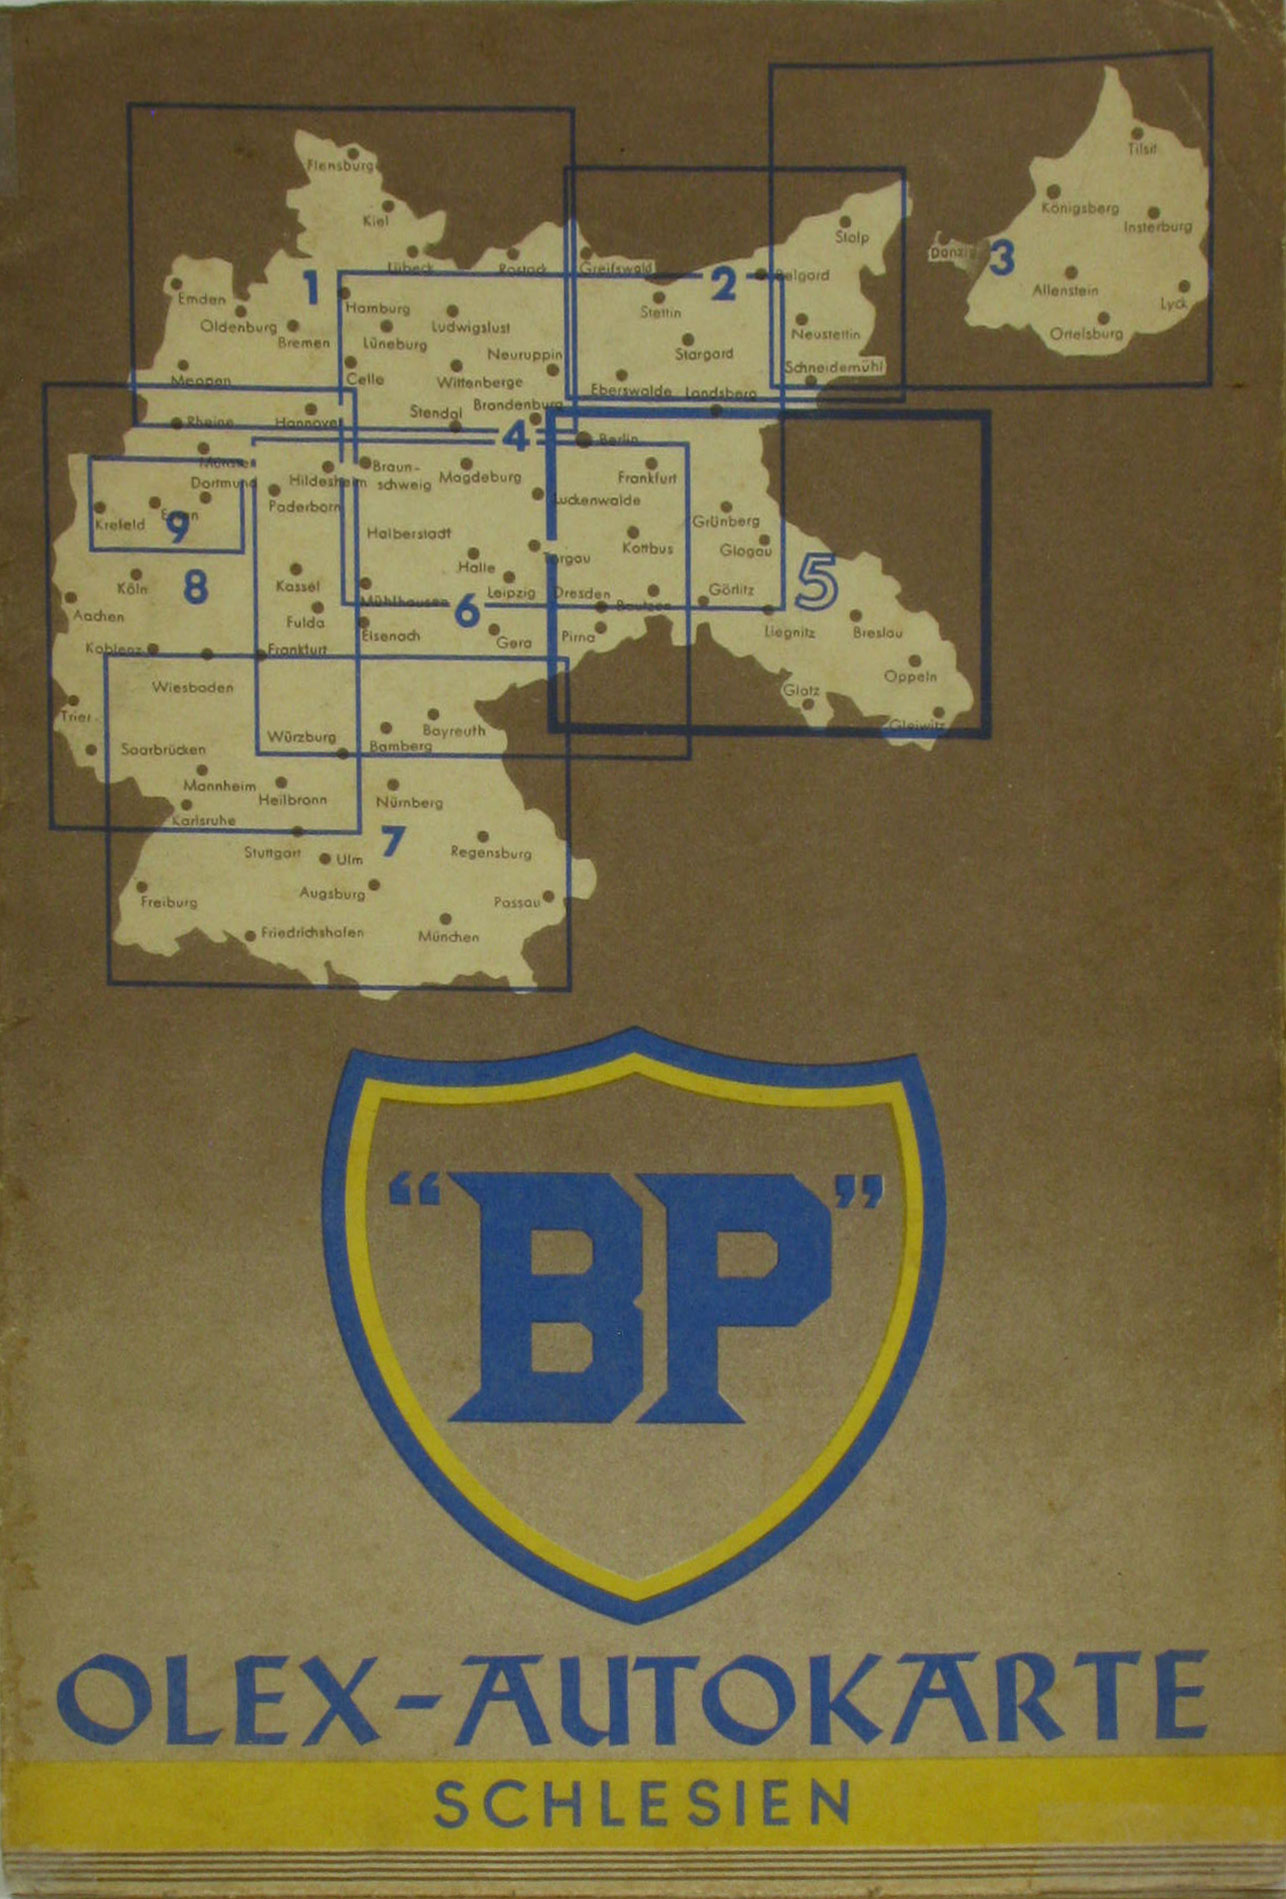   BP OLEX-Autokarte Schlesien (Karte 5) 